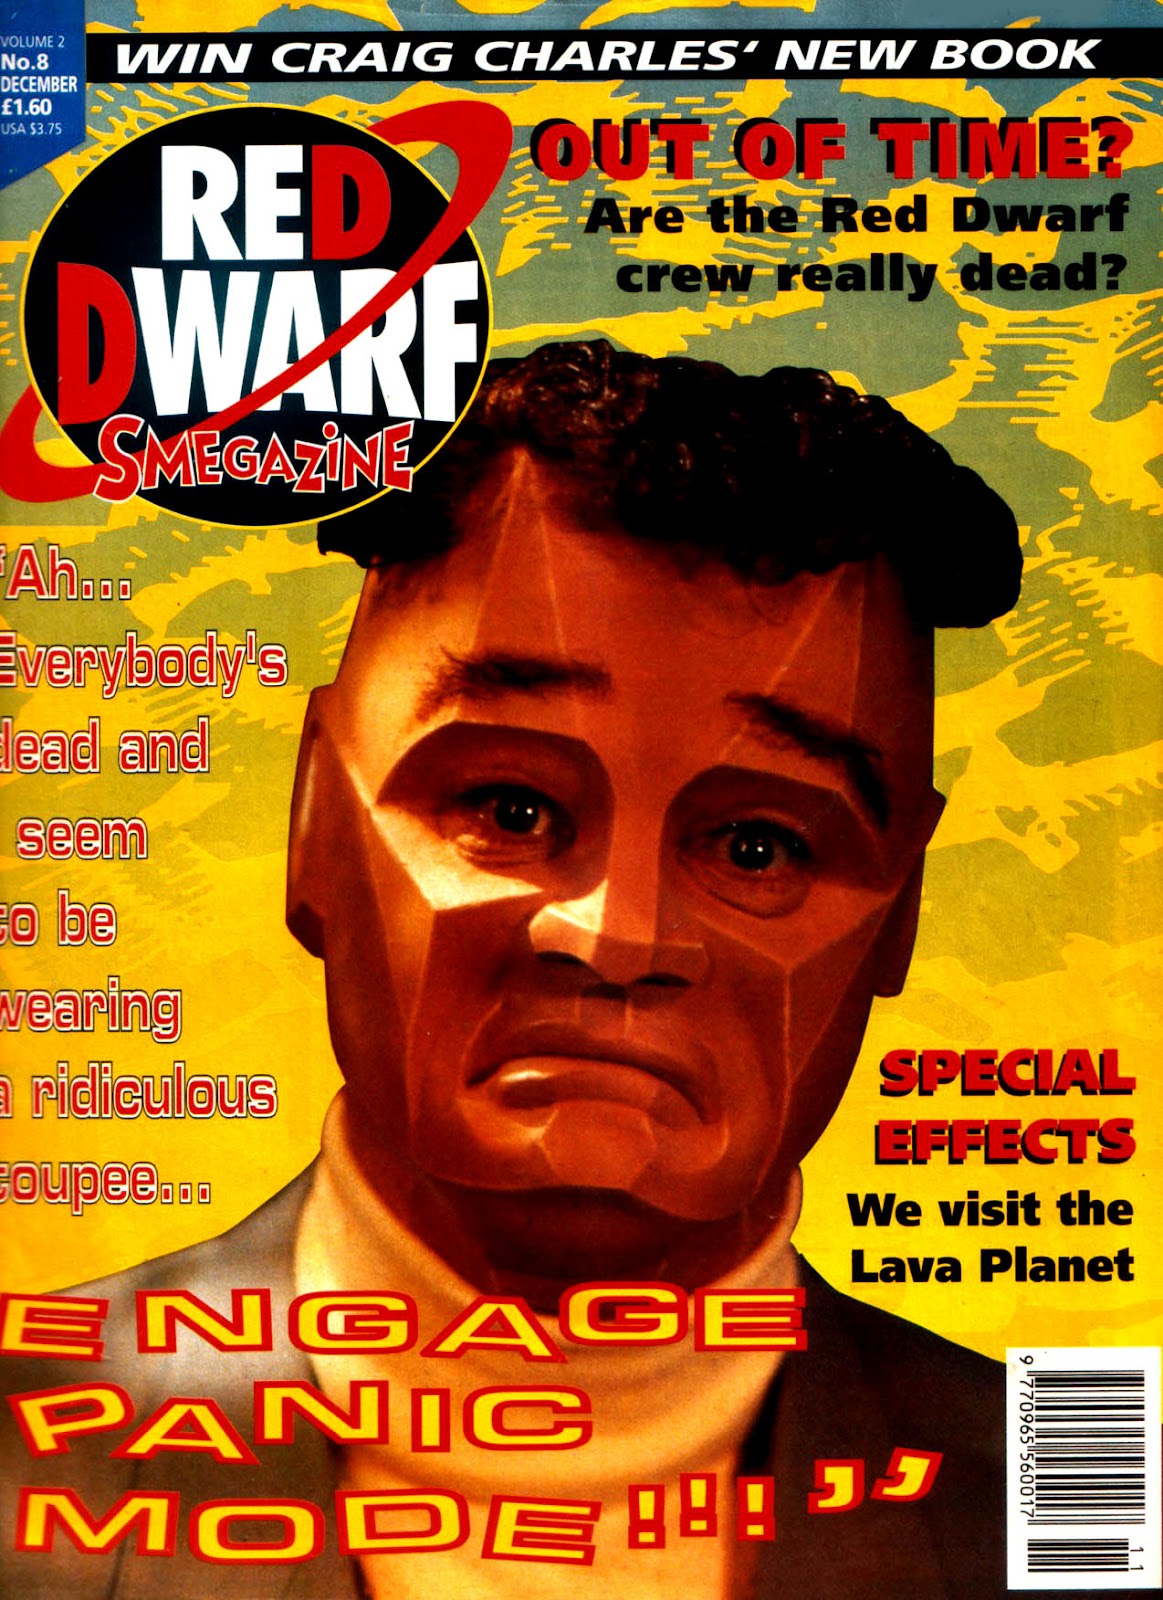 Red Dwarf Smegazine (1993) issue 8 - Page 1